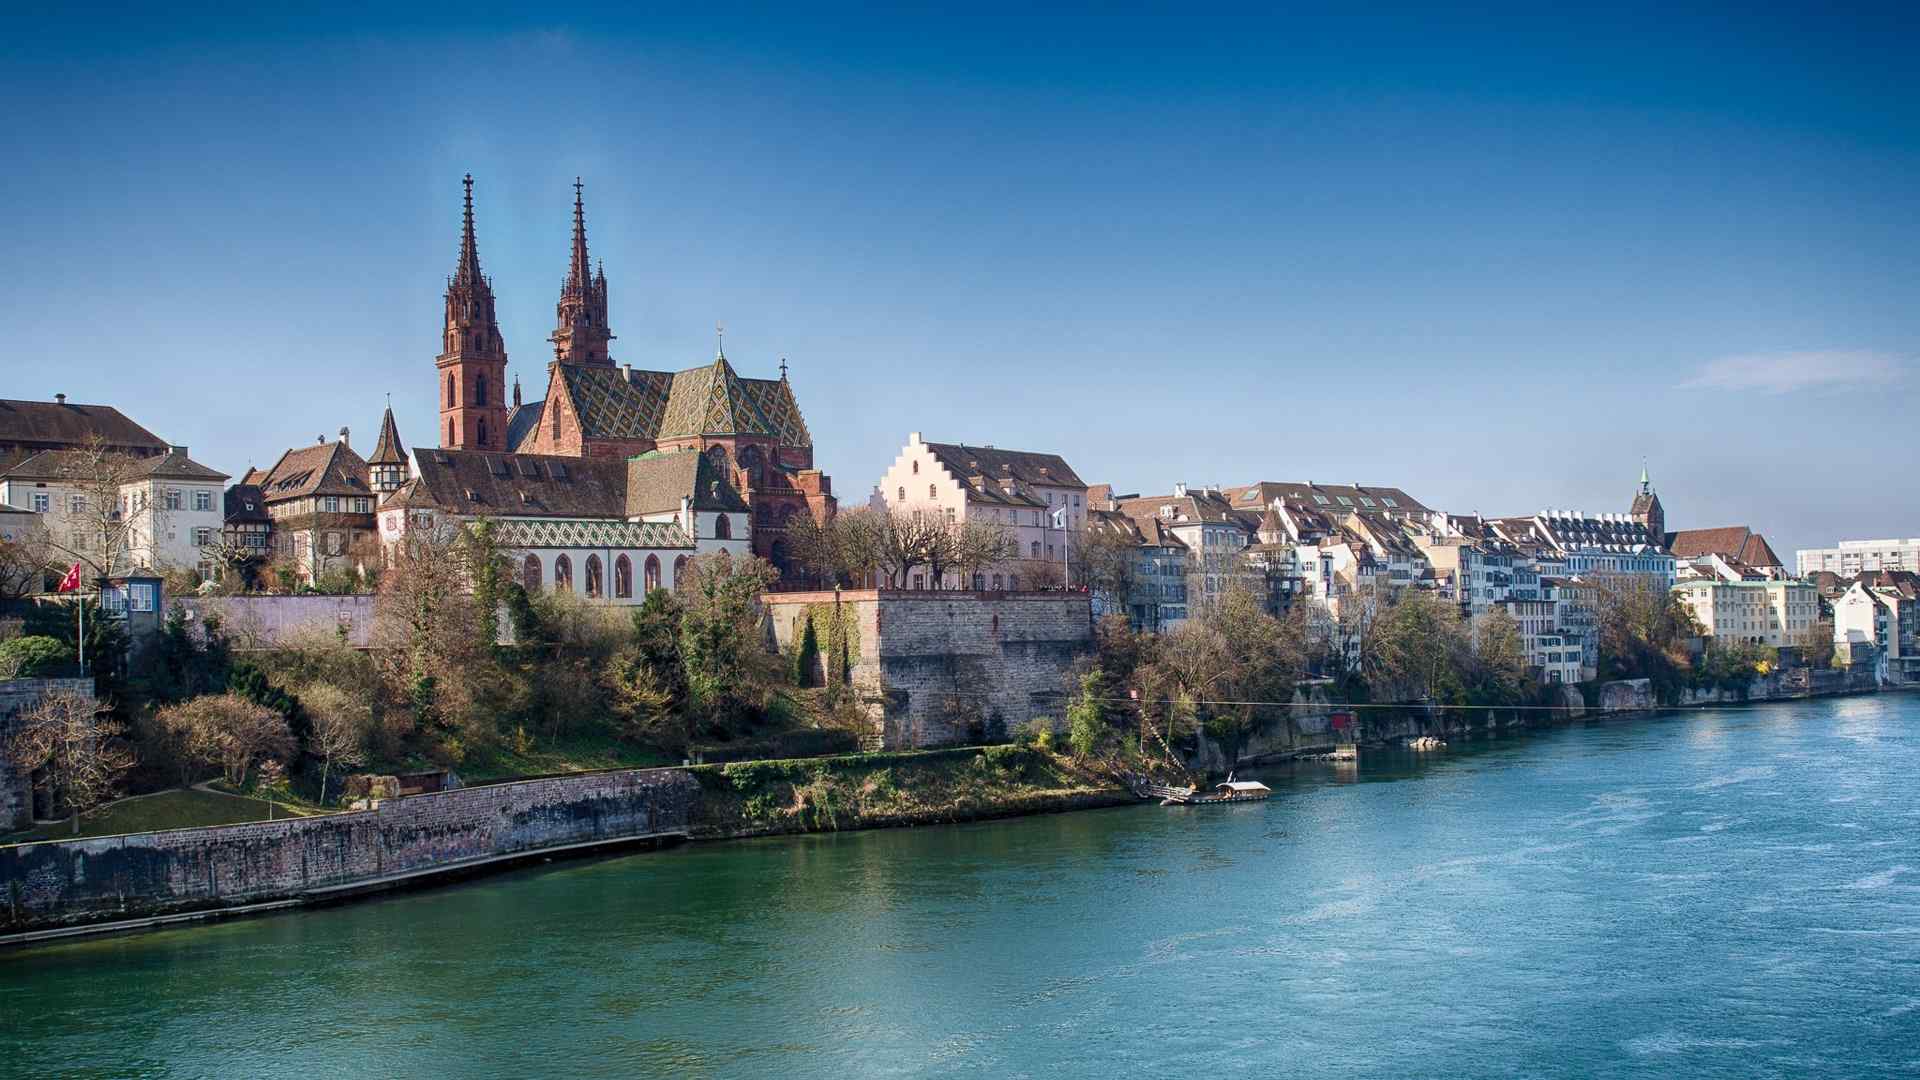 莱茵河风景图片桌面壁纸